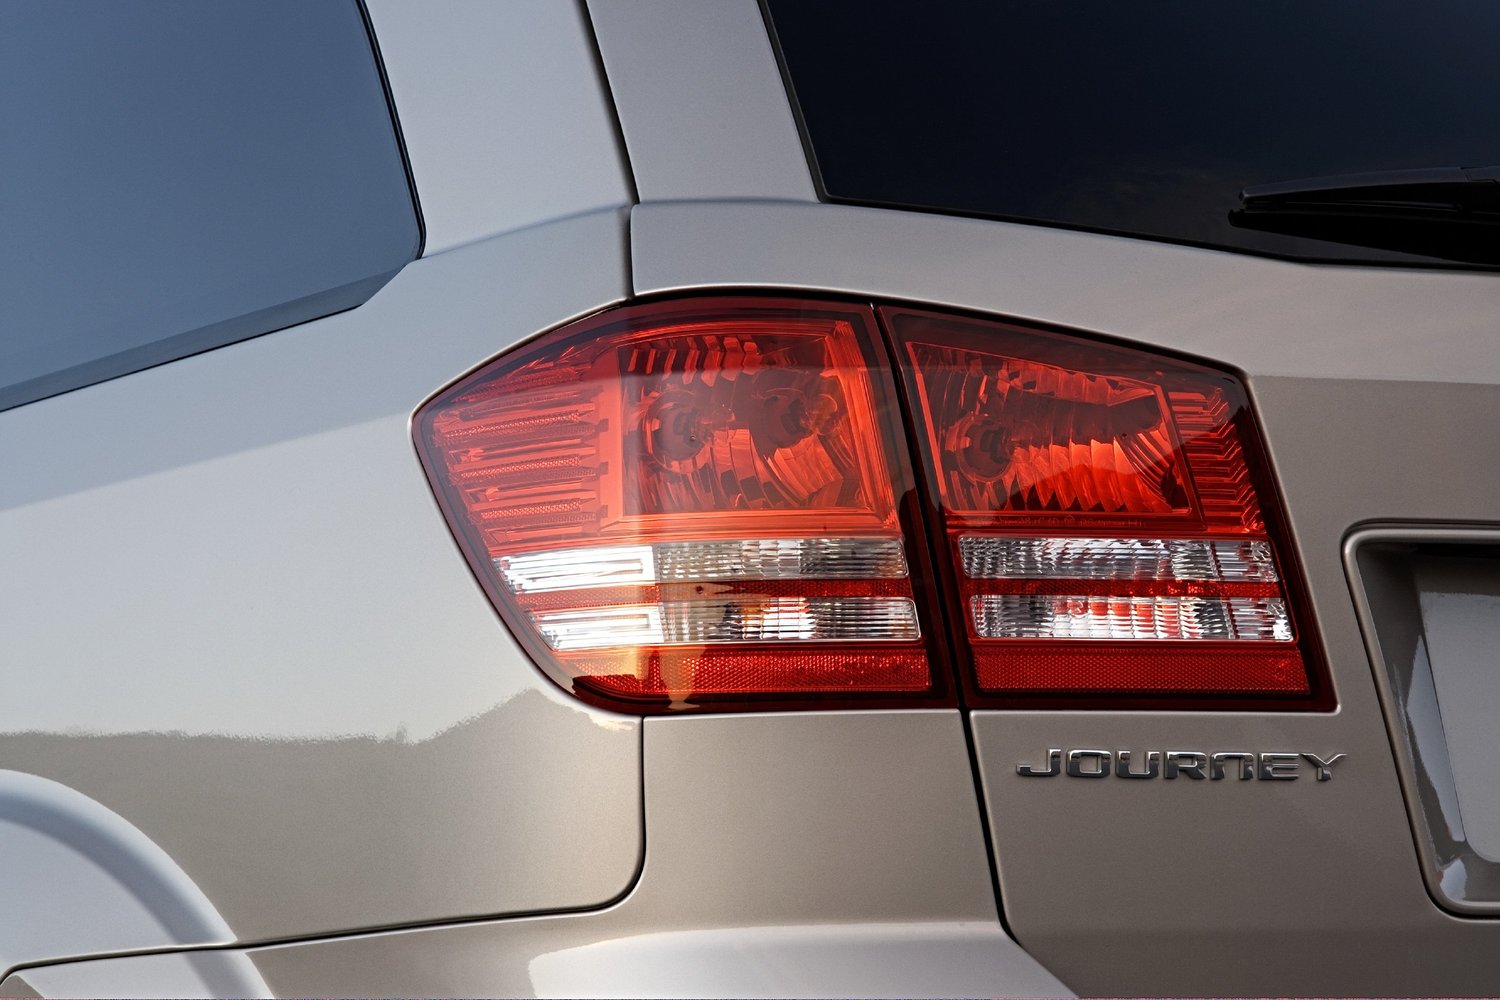 кроссовер Dodge Journey 2008 - 2016г выпуска модификация 3.5 AT (235 л.с.) 4×4